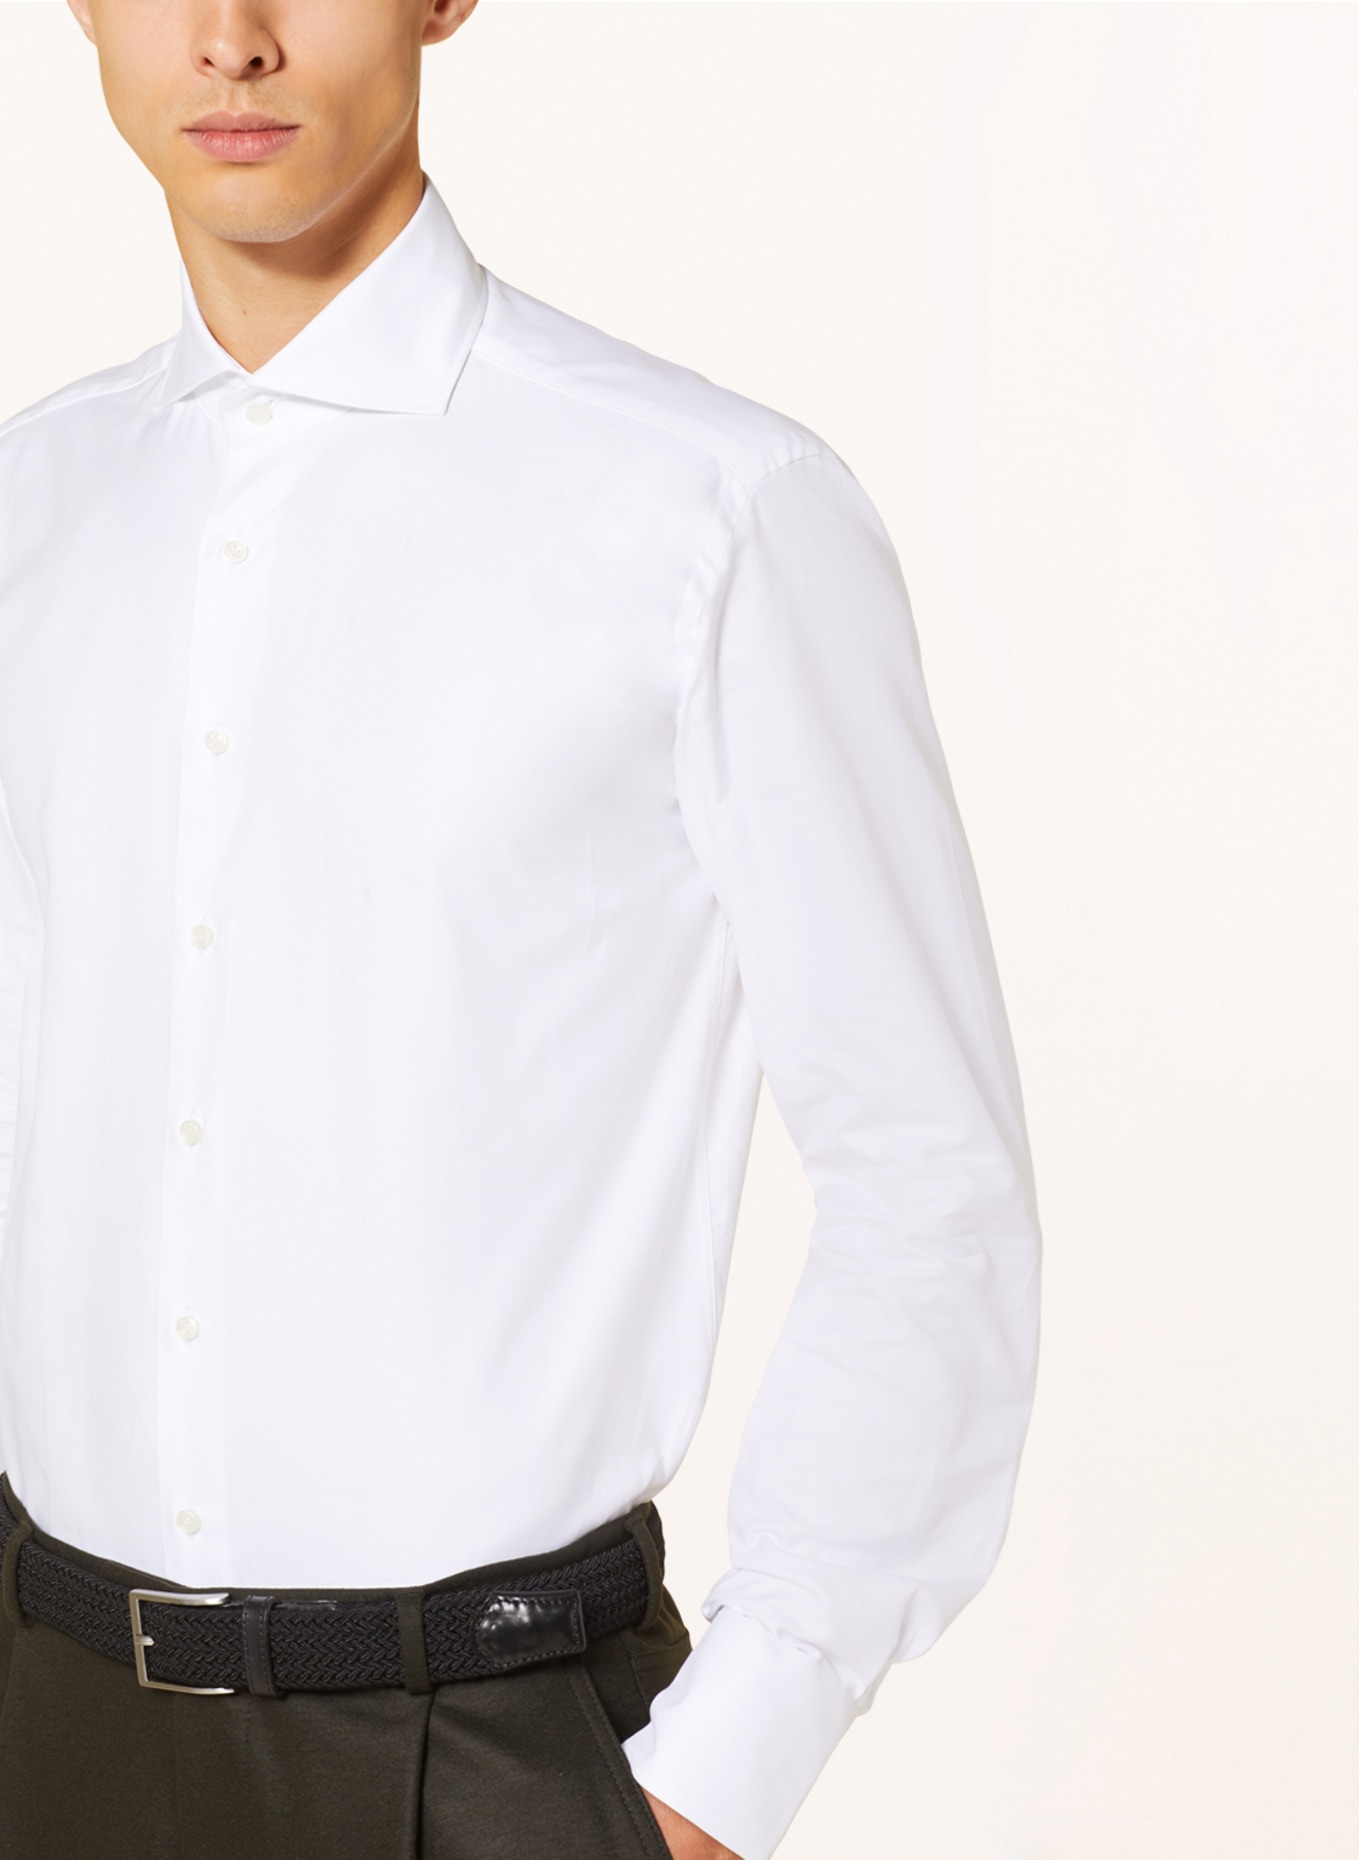 ARTIGIANO Shirt classic fit, Color: WHITE (Image 4)